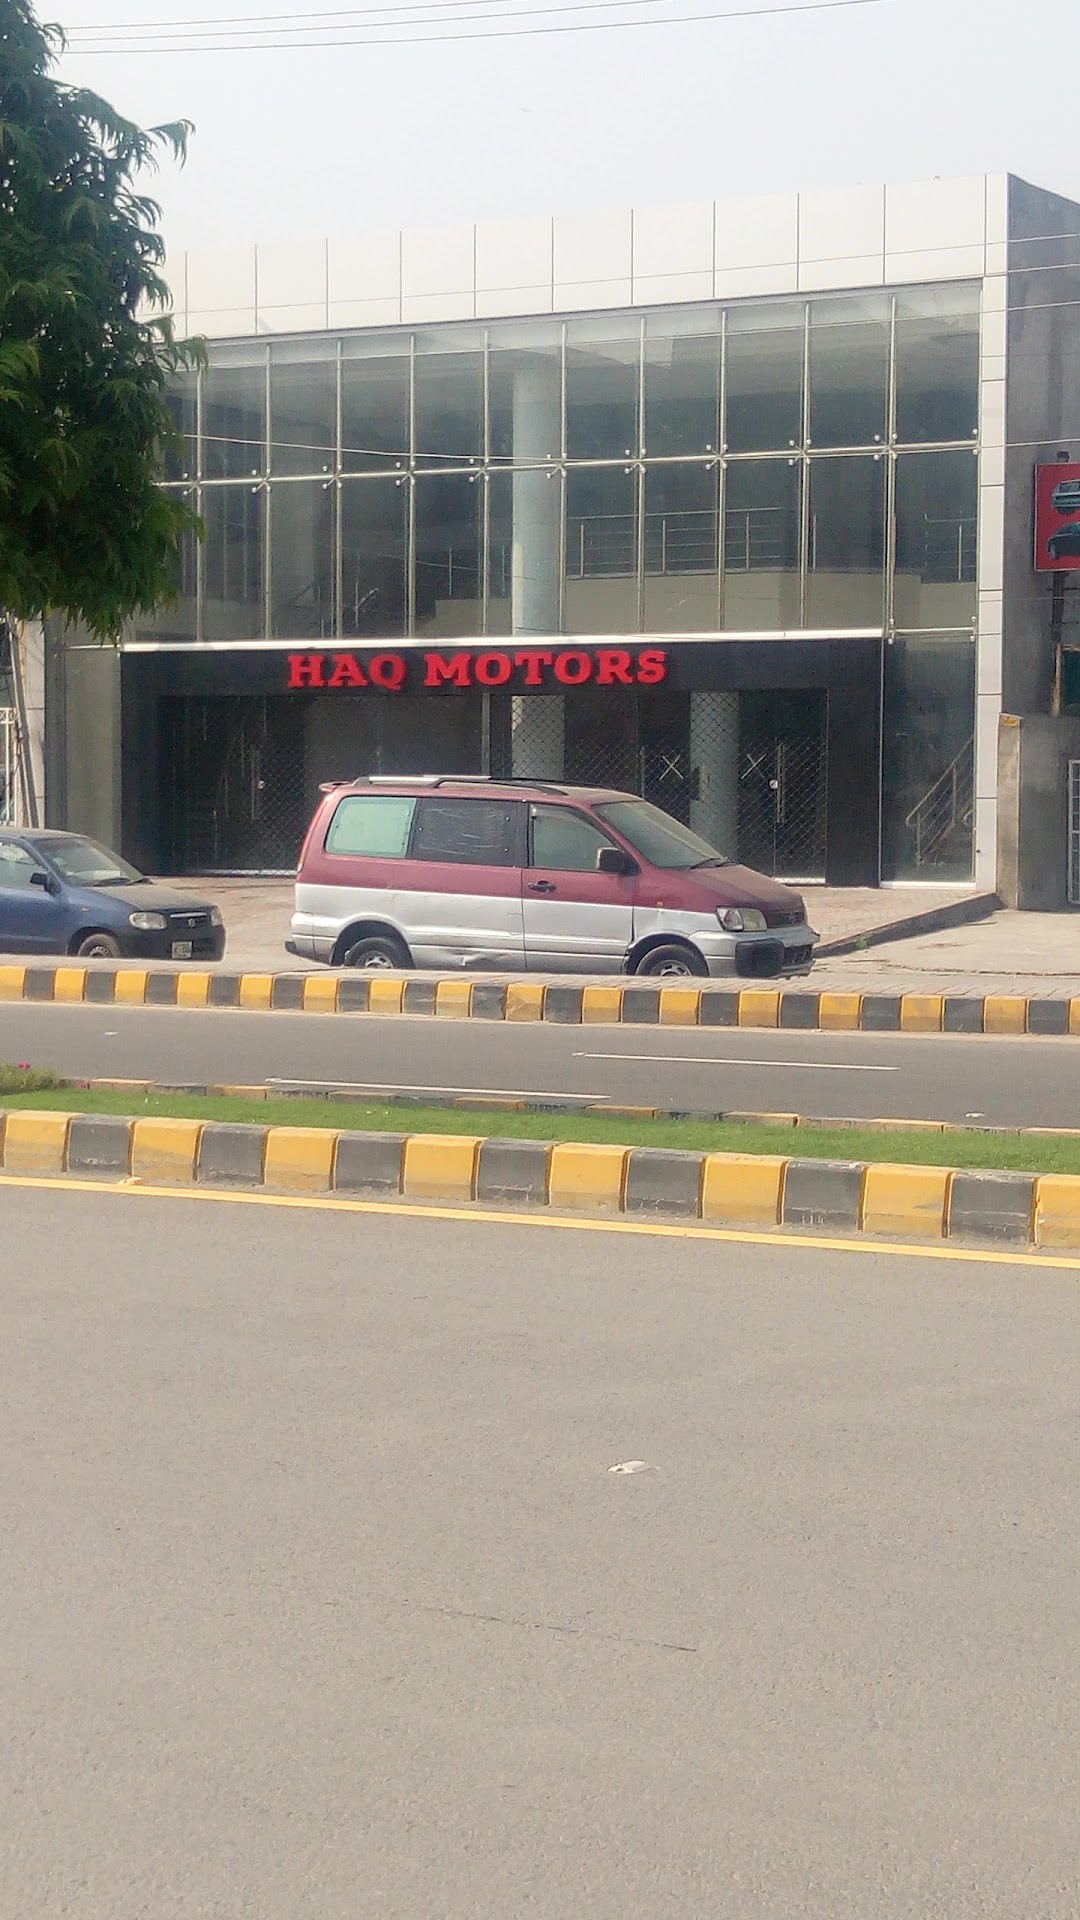 Haq Motors